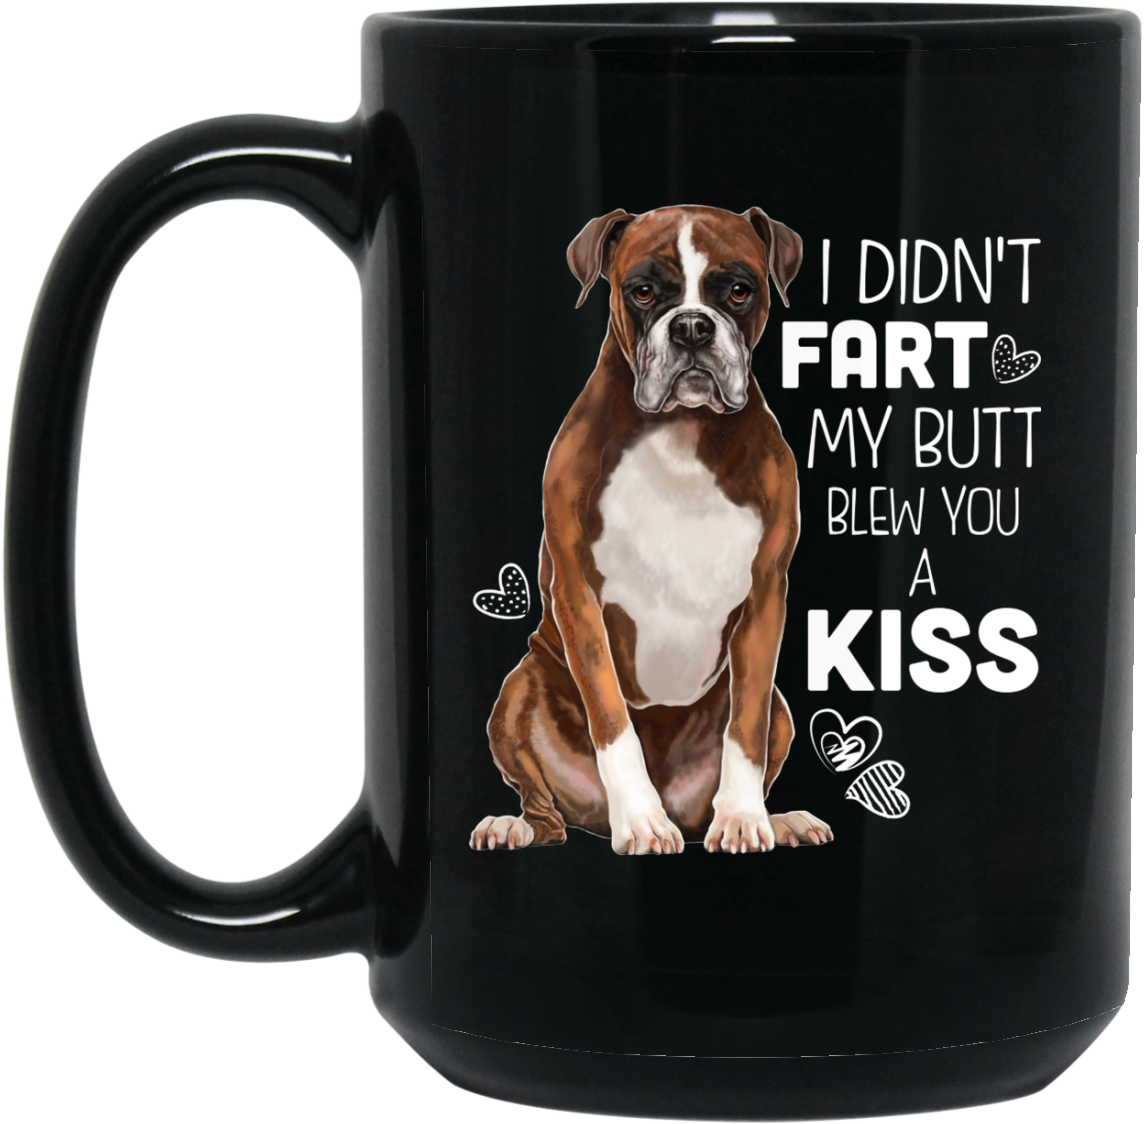 Download Funny Boxer Dog Coffee Mug - Mug PNG Image with No Background ...